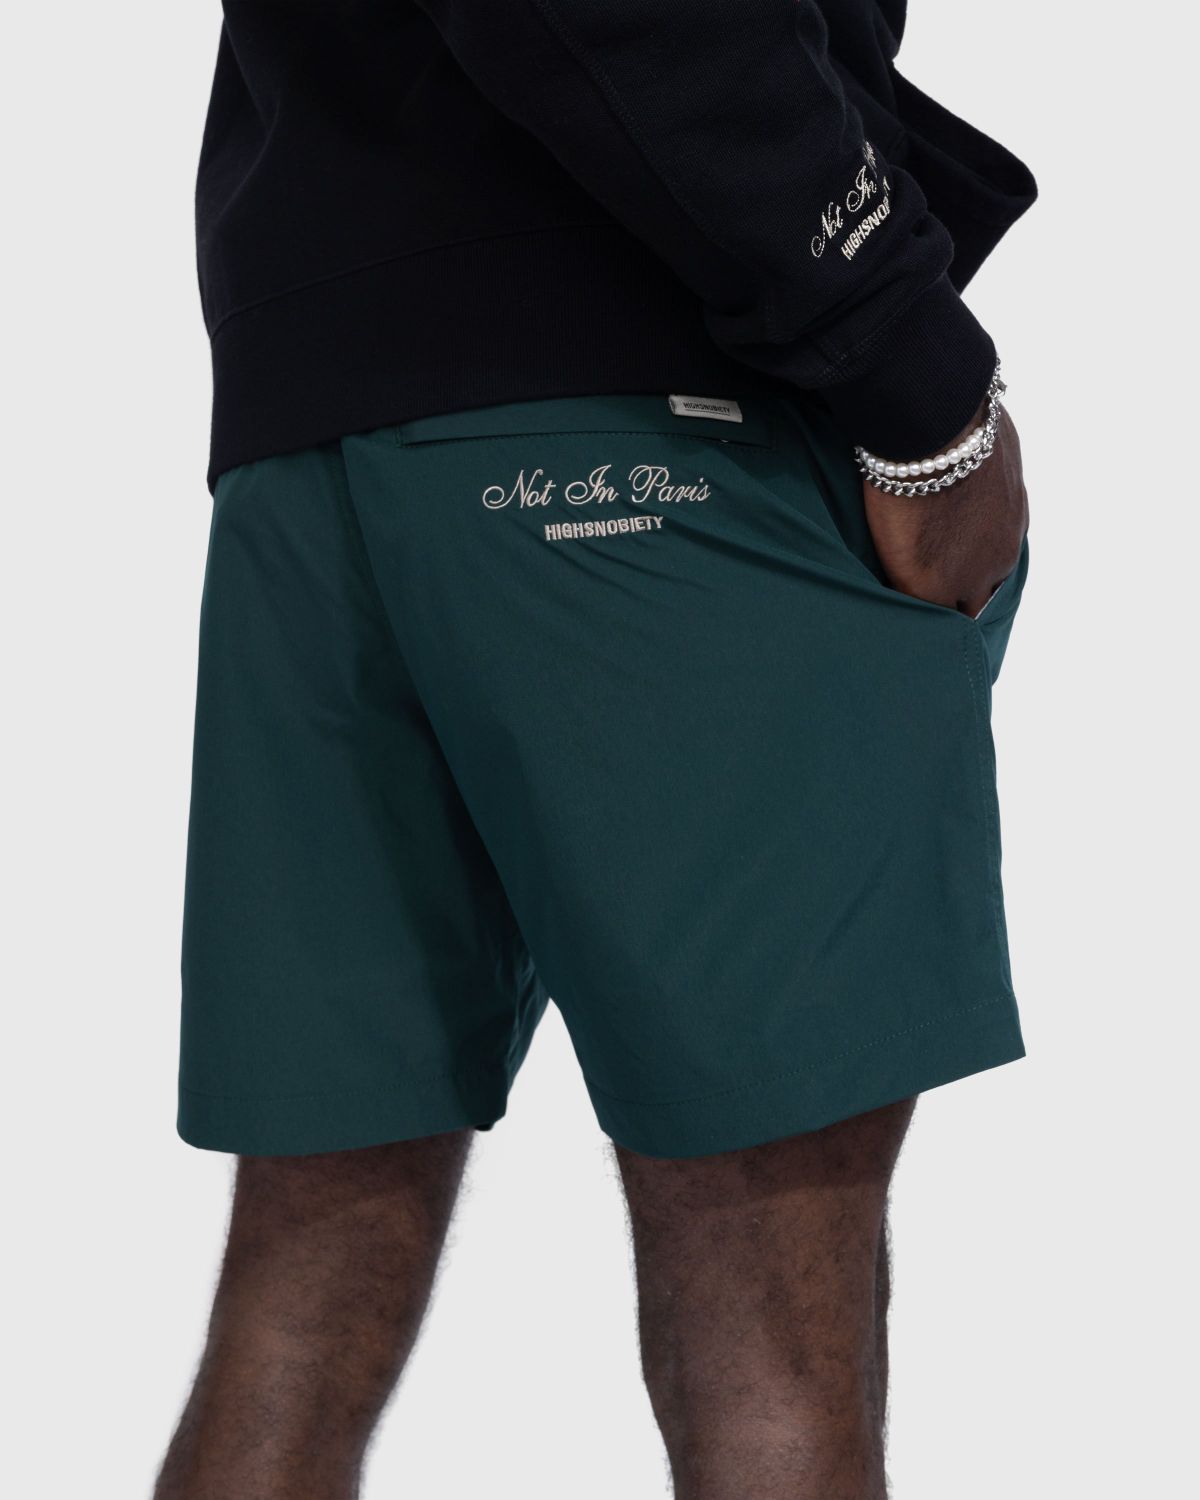 Highsnobiety – Not in Paris 5 Nylon Shorts - Shorts - Green - Image 4